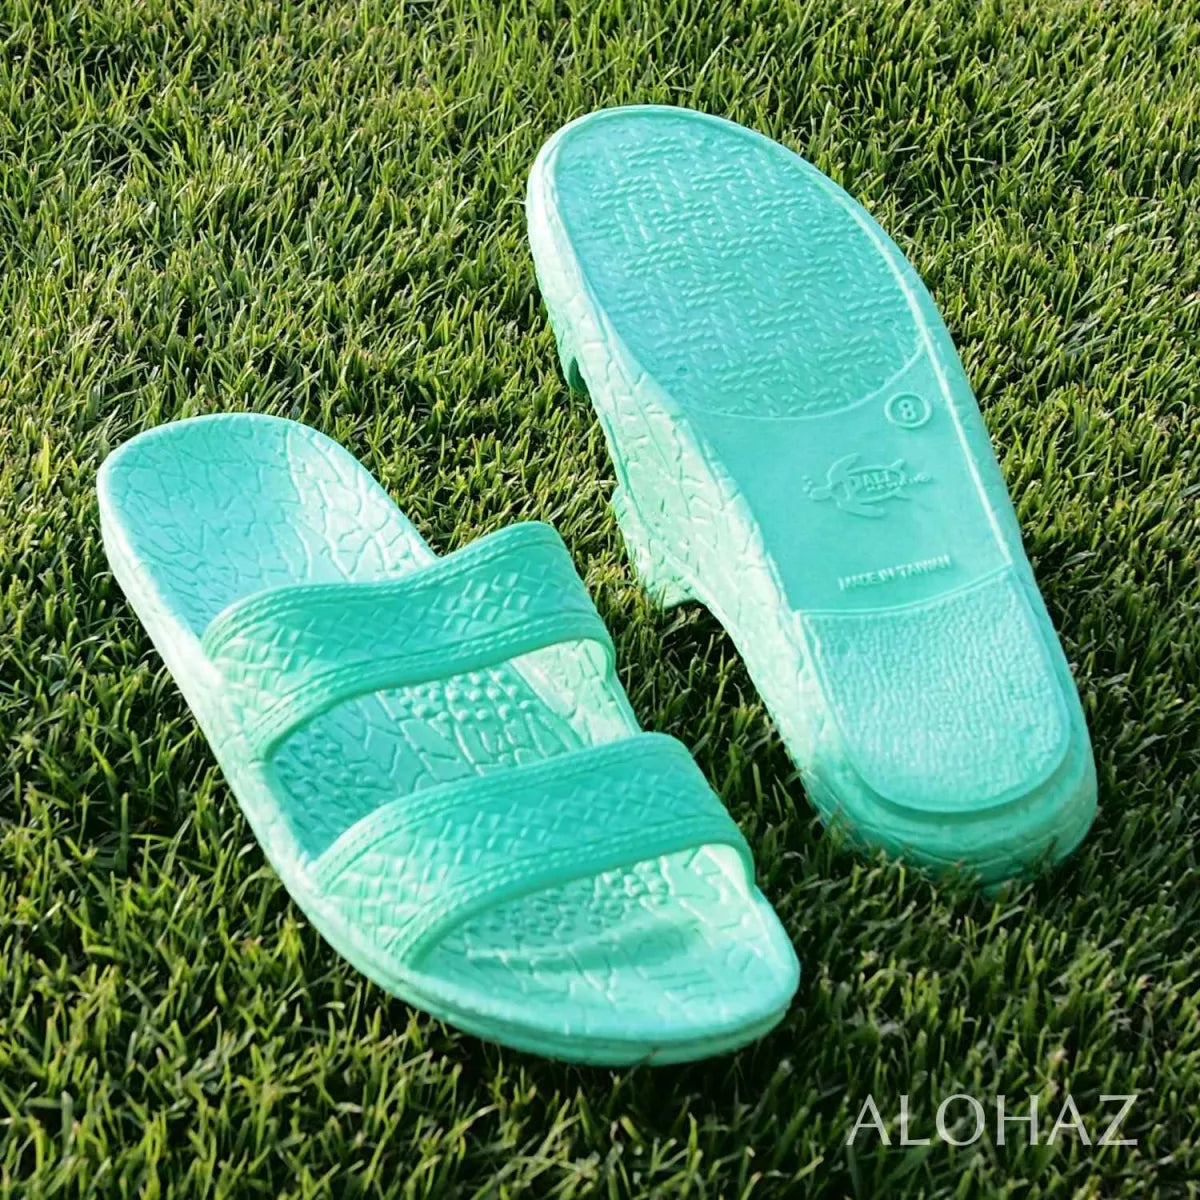 Green classic jandals® - pali hawaii jesus sandals